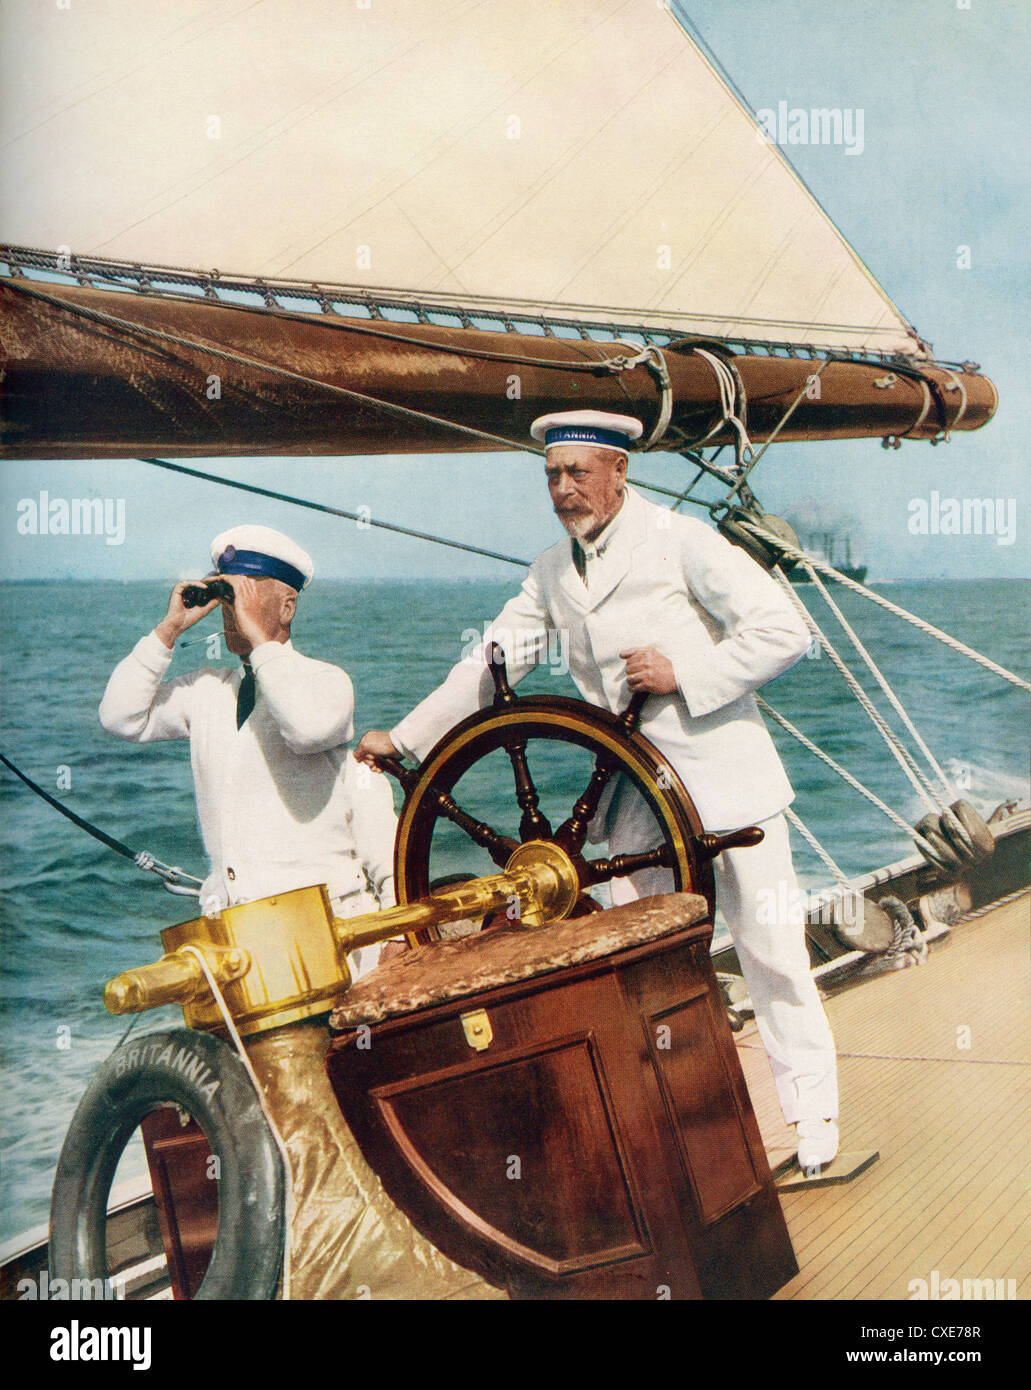 Le roi George V au volant de son yacht, Britannia, pendant la semaine de régate des Cowes, Angleterre, 1924. George V, 1865 – 1936. Roi du Royaume-Uni et des dominions britanniques, et empereur de l'Inde Banque D'Images